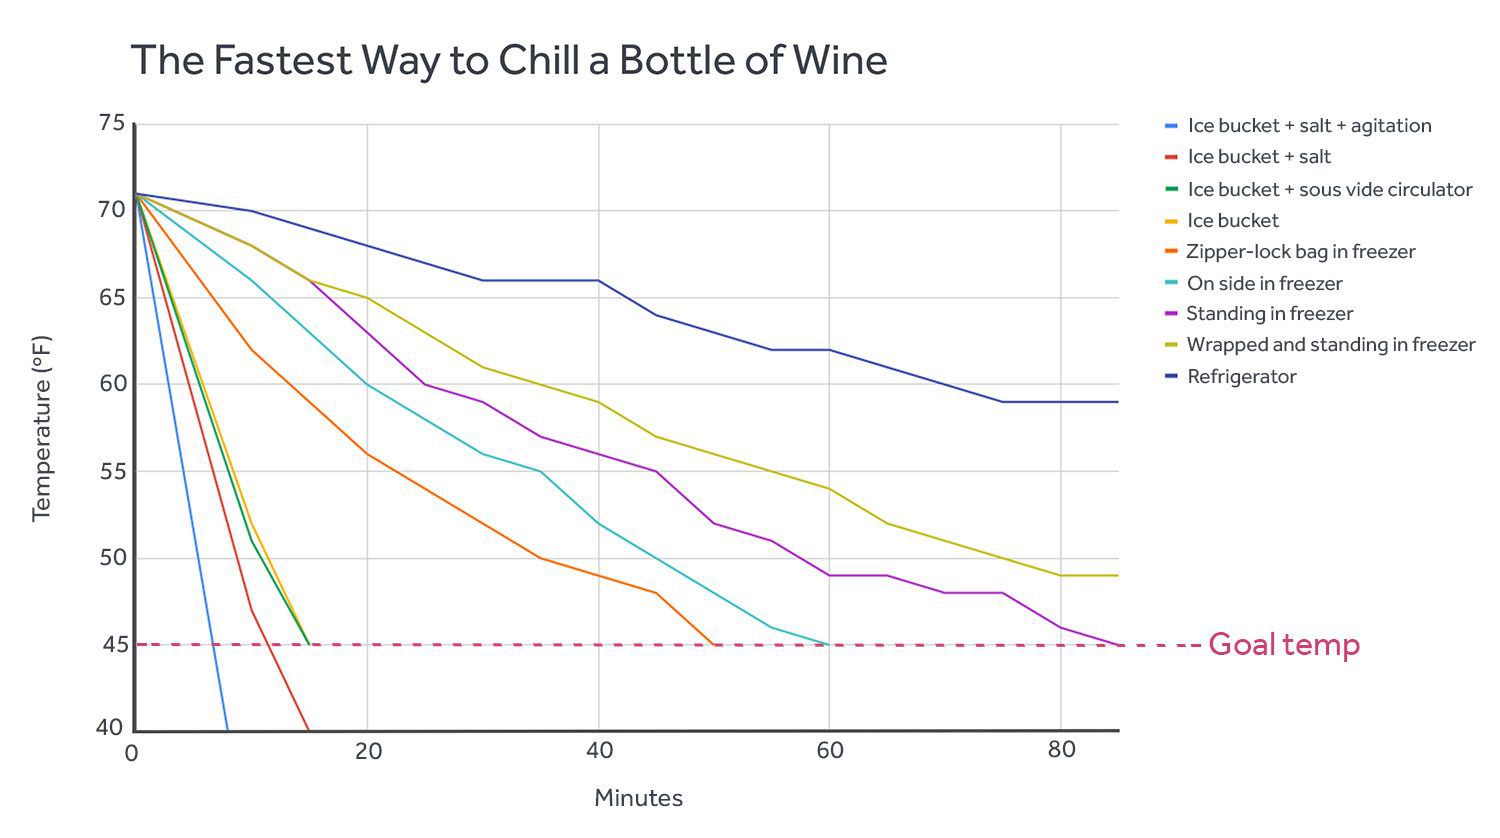 图表显示了各种方法冷却葡萄酒所需的时间(以分钟为单位)，以达到45华氏度